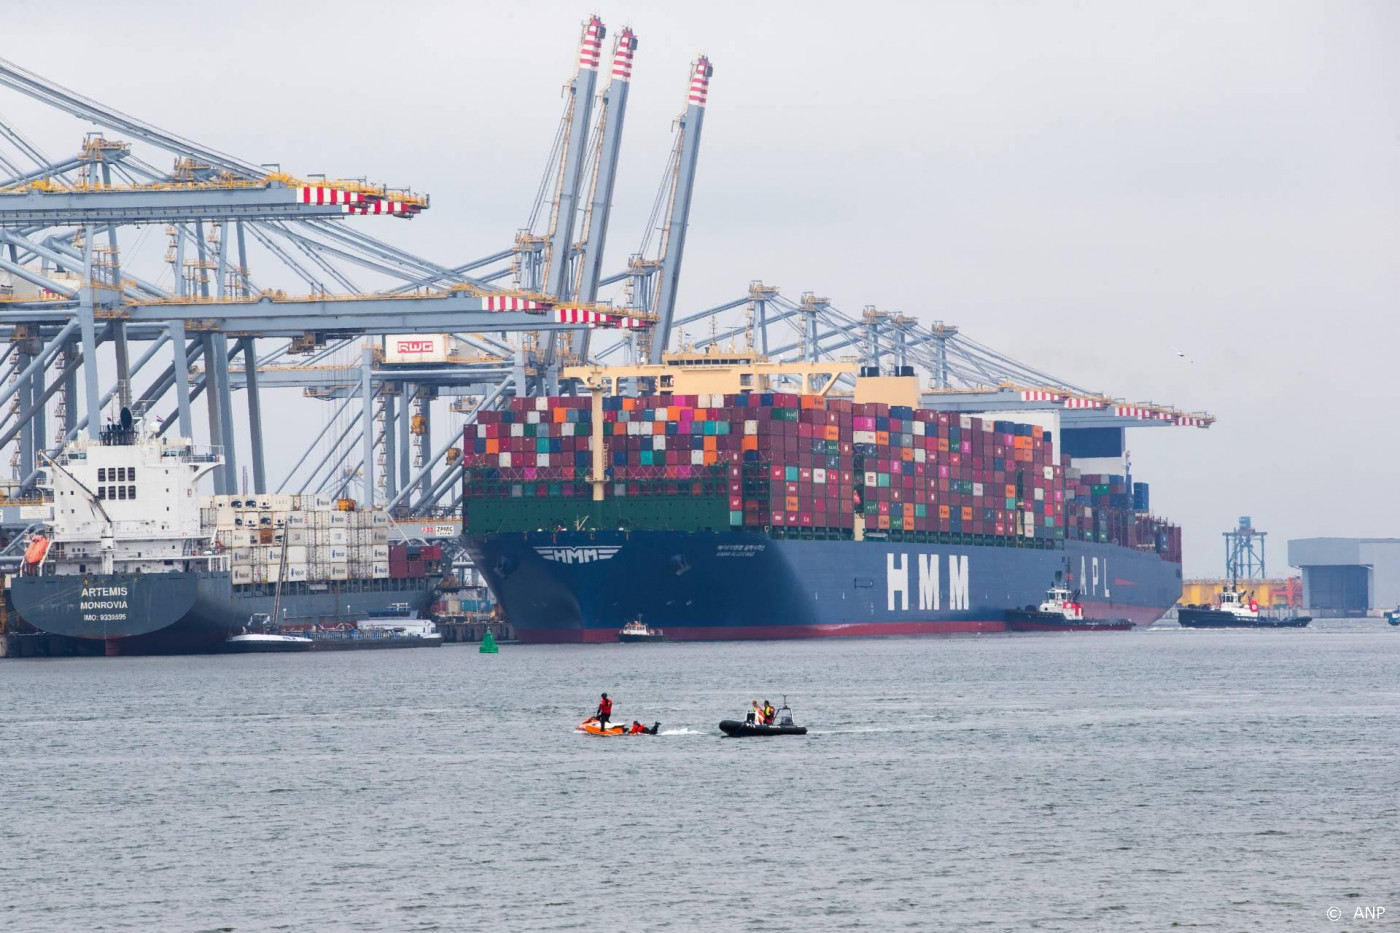 Rotterdamse haven krijgt slimme regenwaterafvoer met sensoren